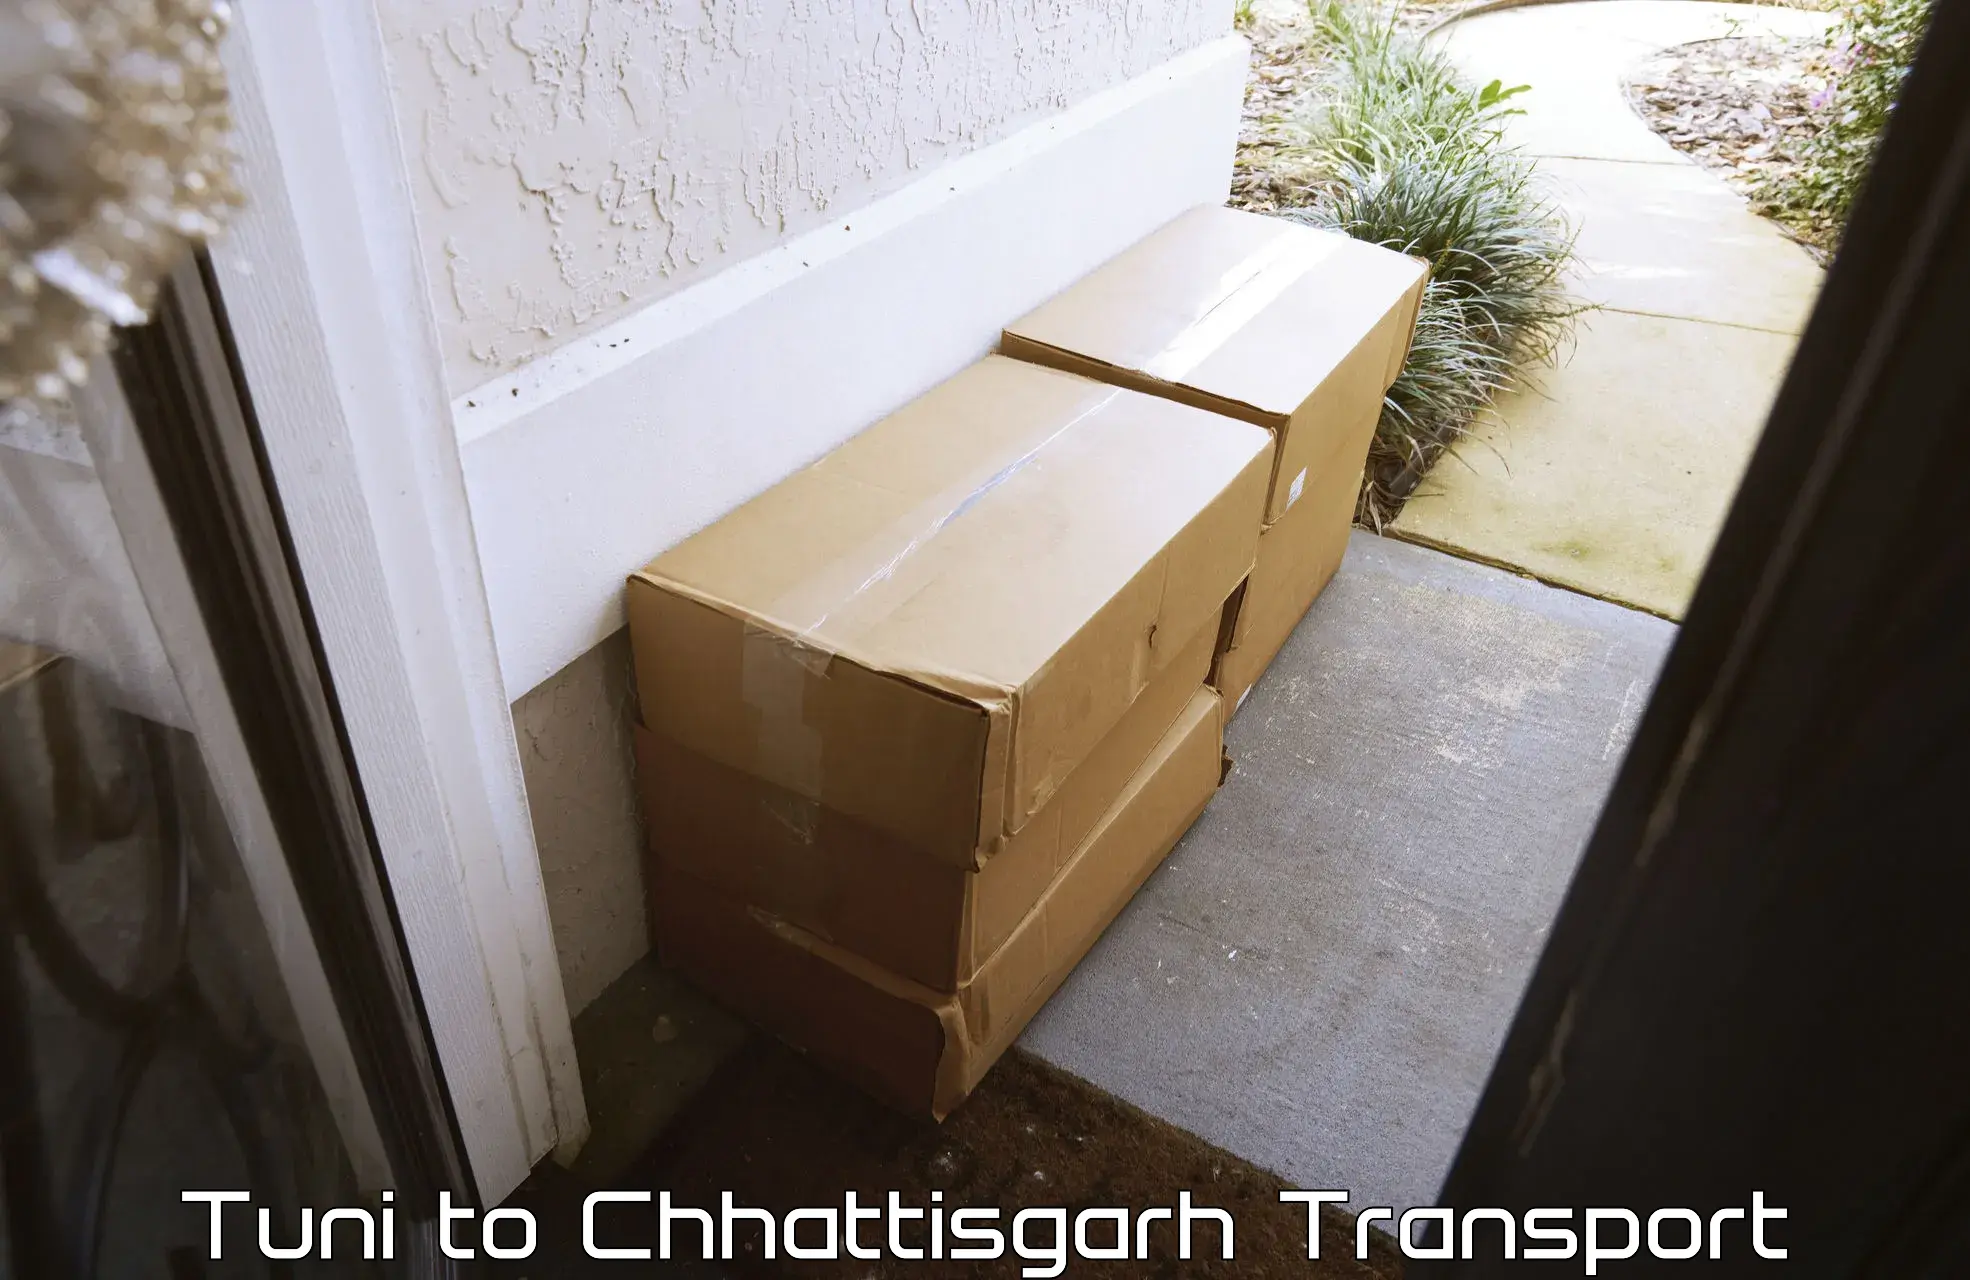 Container transport service Tuni to Chhattisgarh